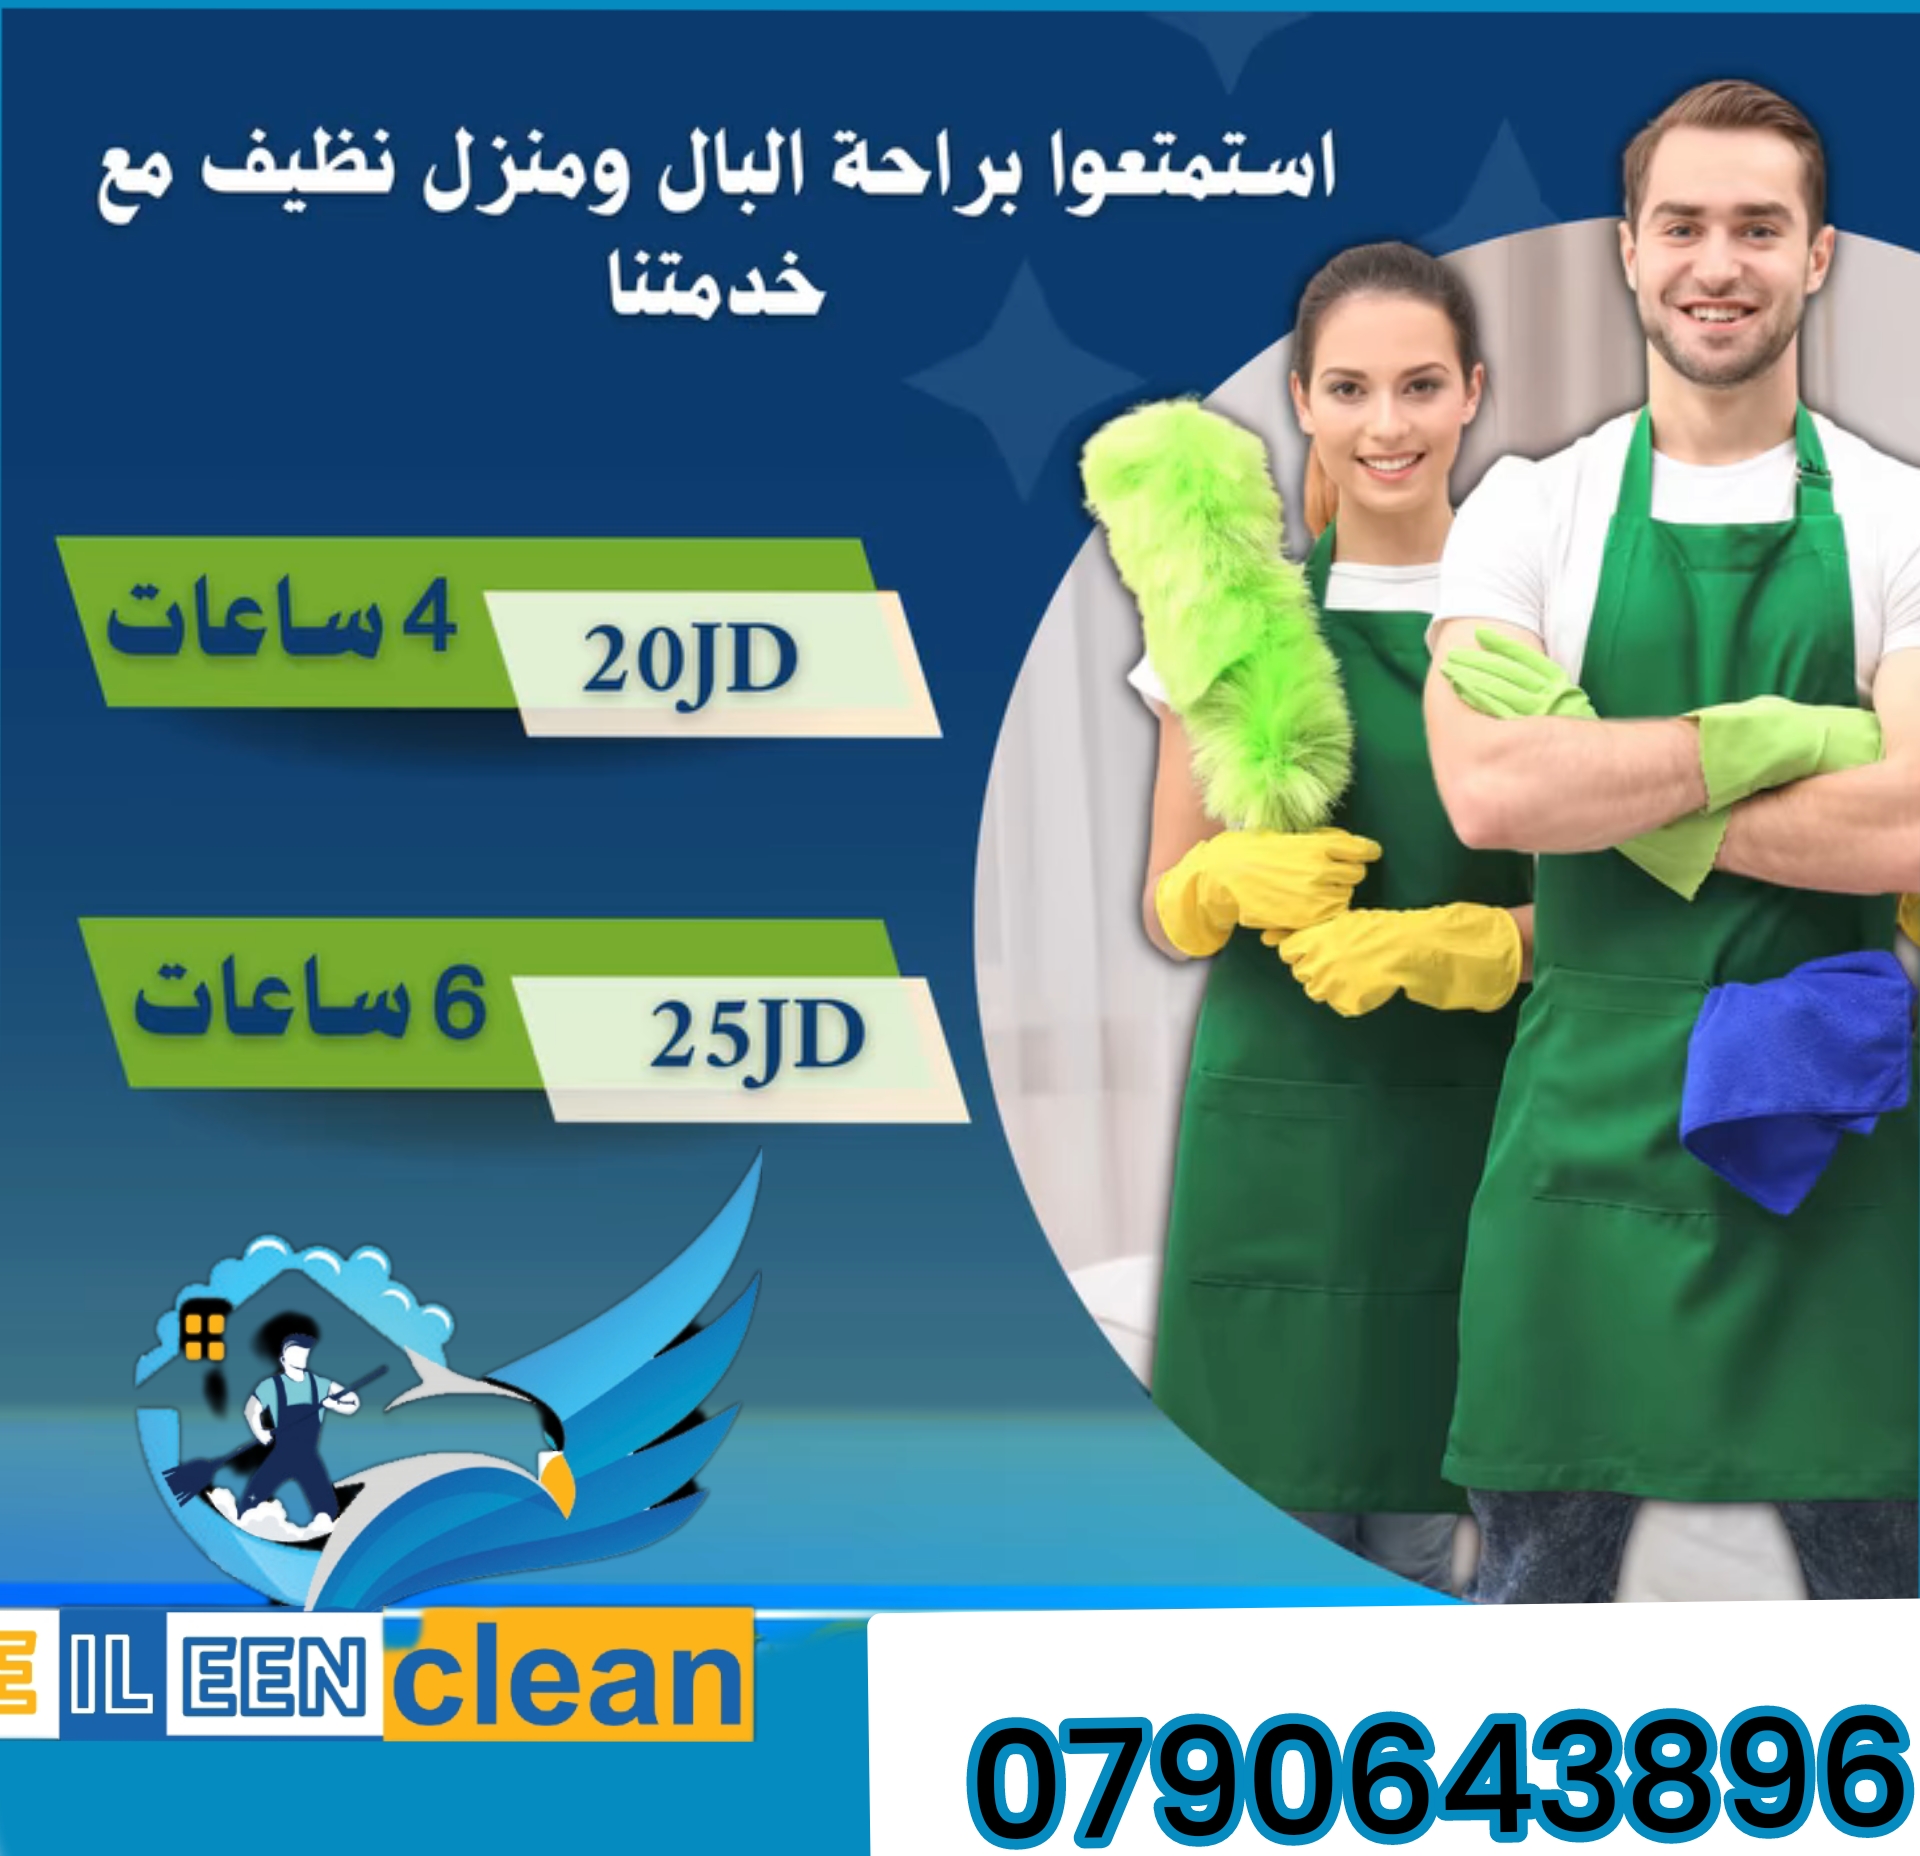 عاملات نظافة مدربات بخبرة لتقديم أفضل خدمة